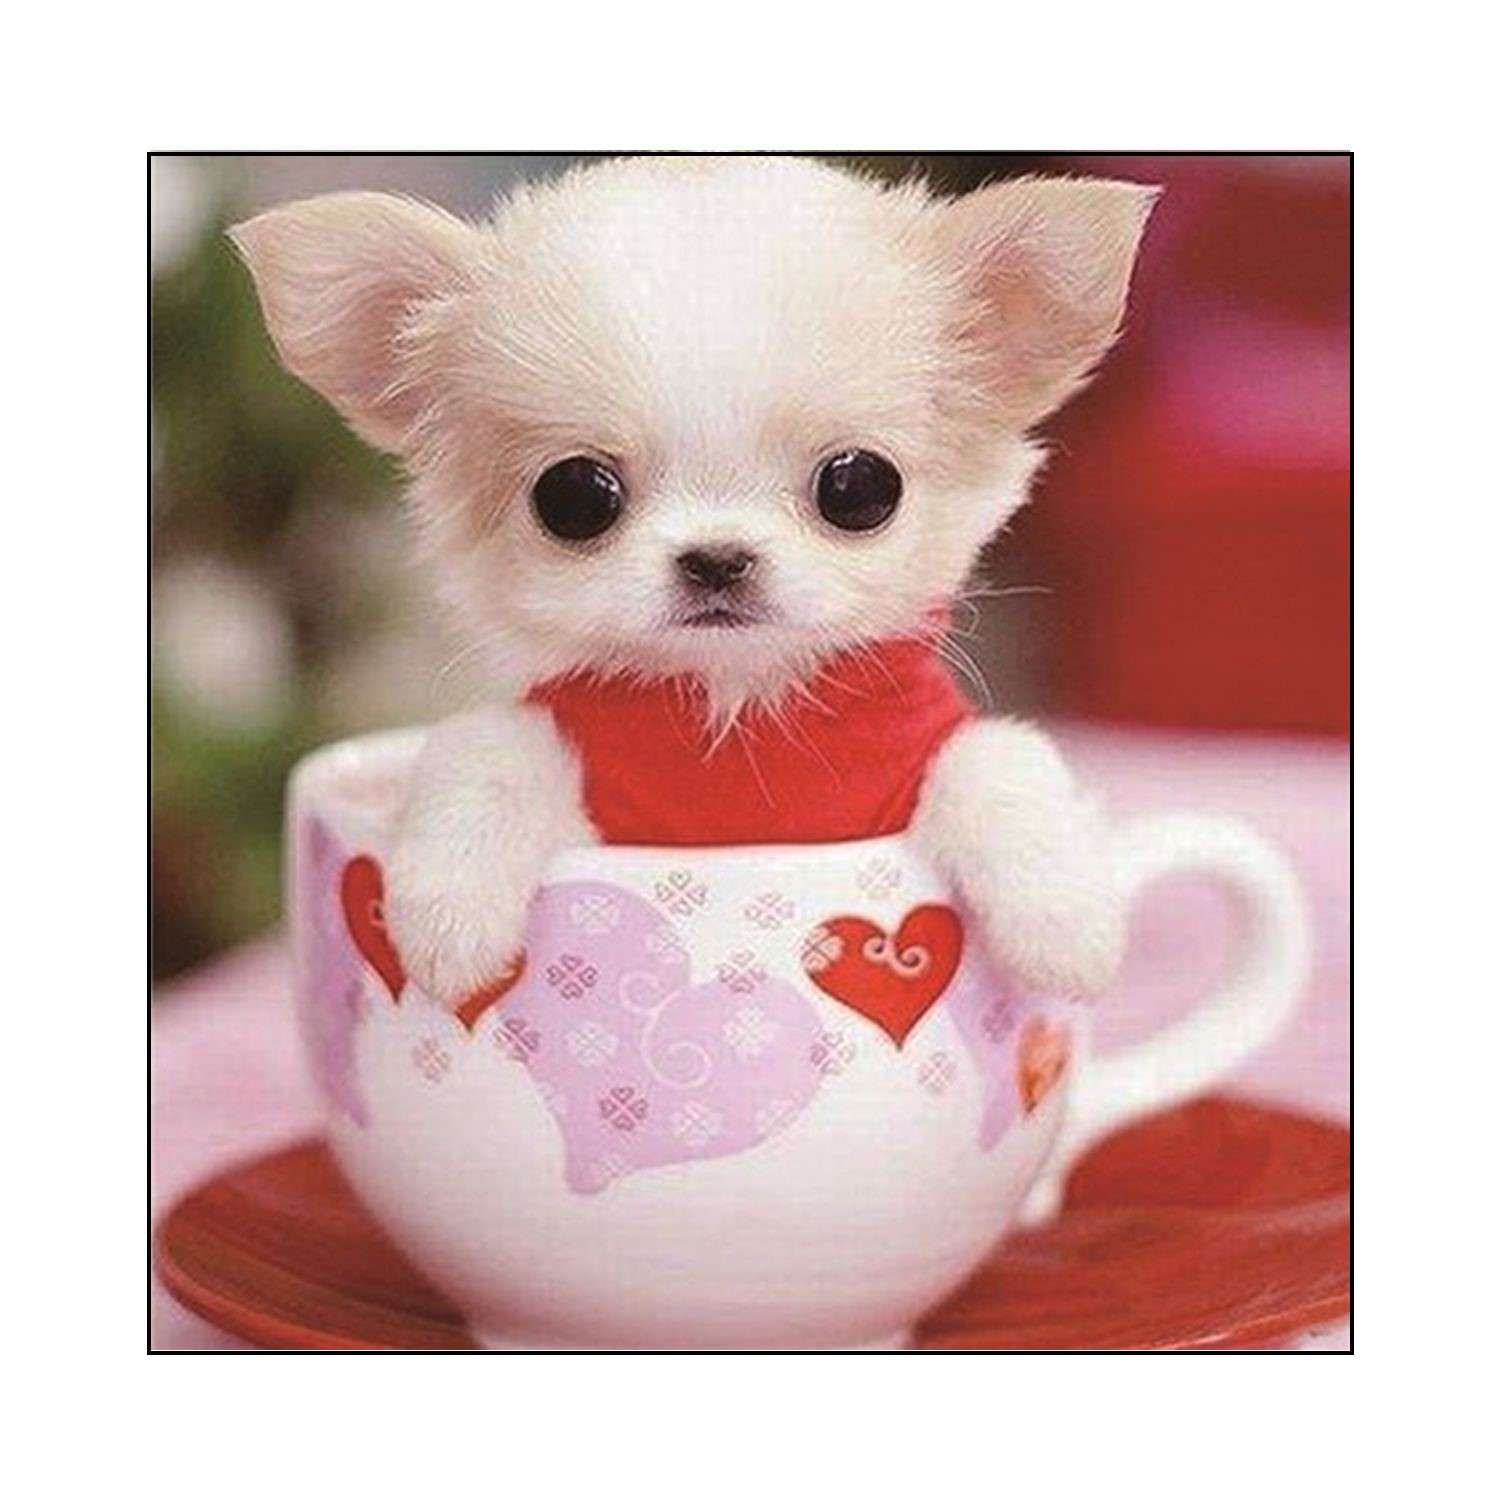 Dogs cup. Чихуахуа Teacup. Милые зверьки. Миленькие собачки. Красивые и милые животные.